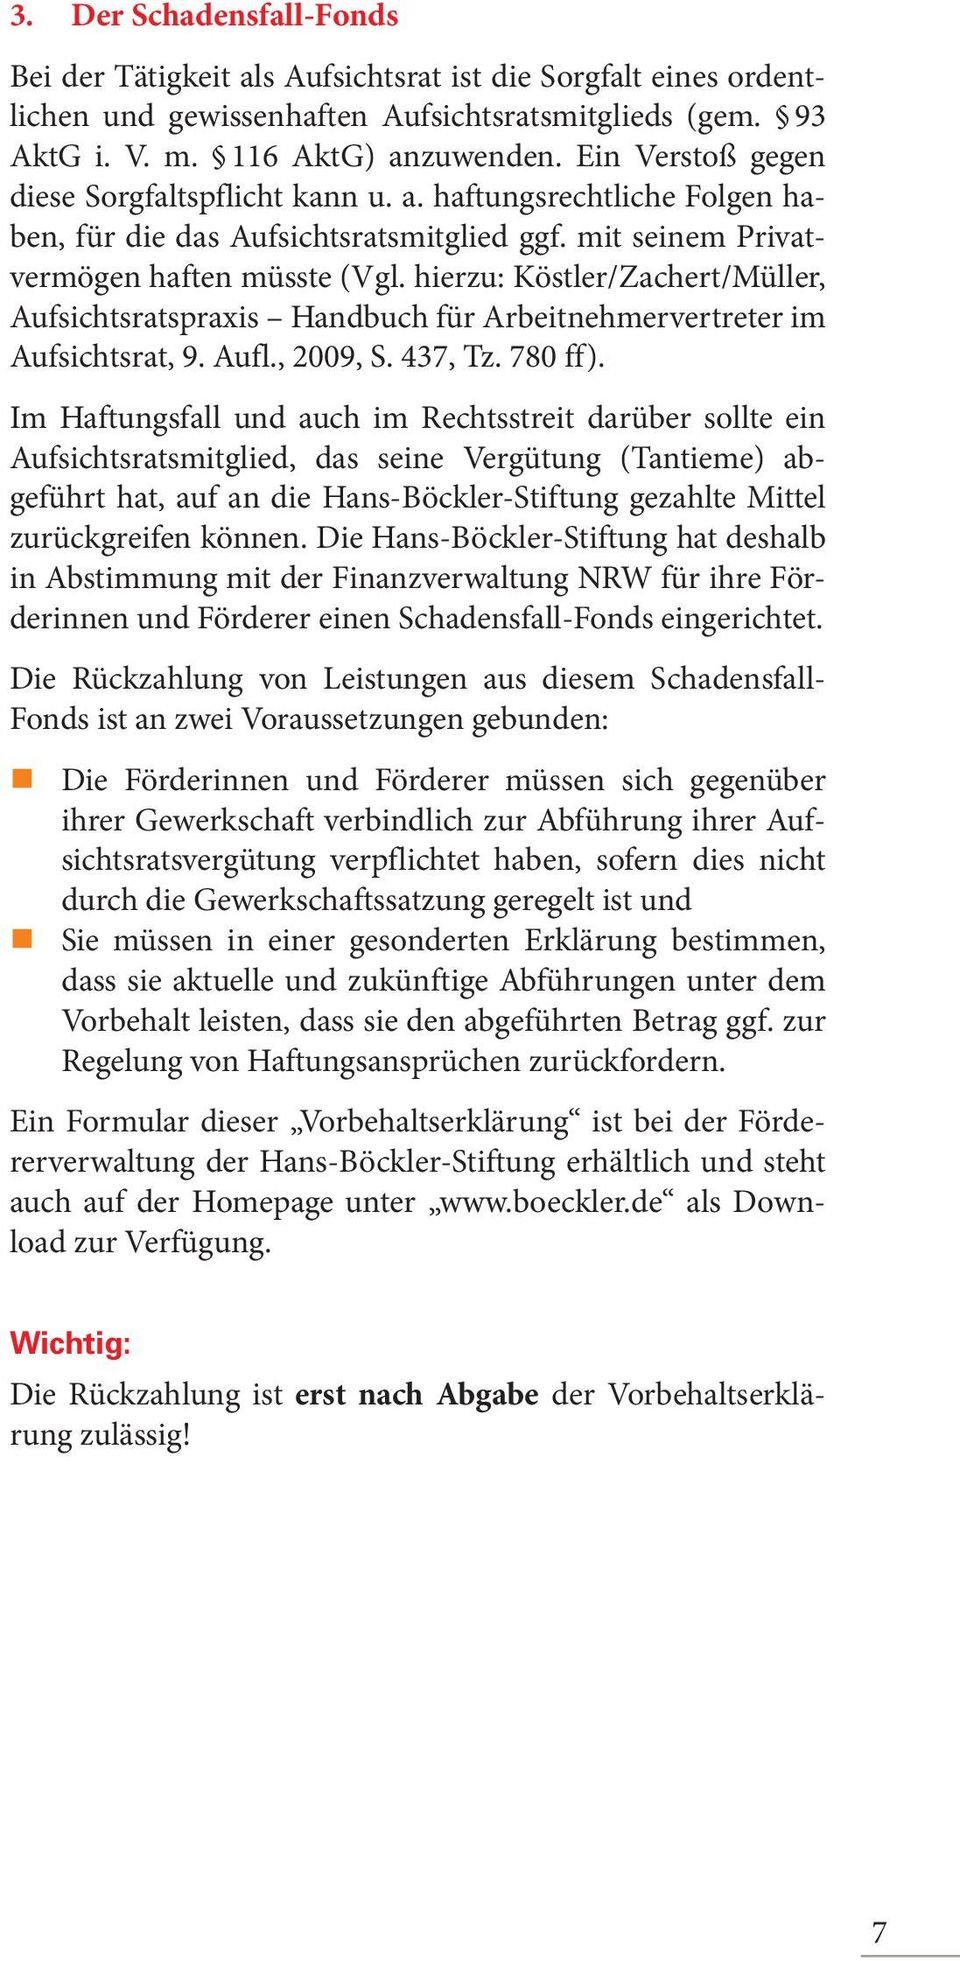 hierzu: Köstler/Zachert/Müller, Aufsichtsratspraxis Handbuch für Arbeitnehmervertreter im Aufsichtsrat, 9. Aufl., 2009, S. 437, Tz. 780 ff).